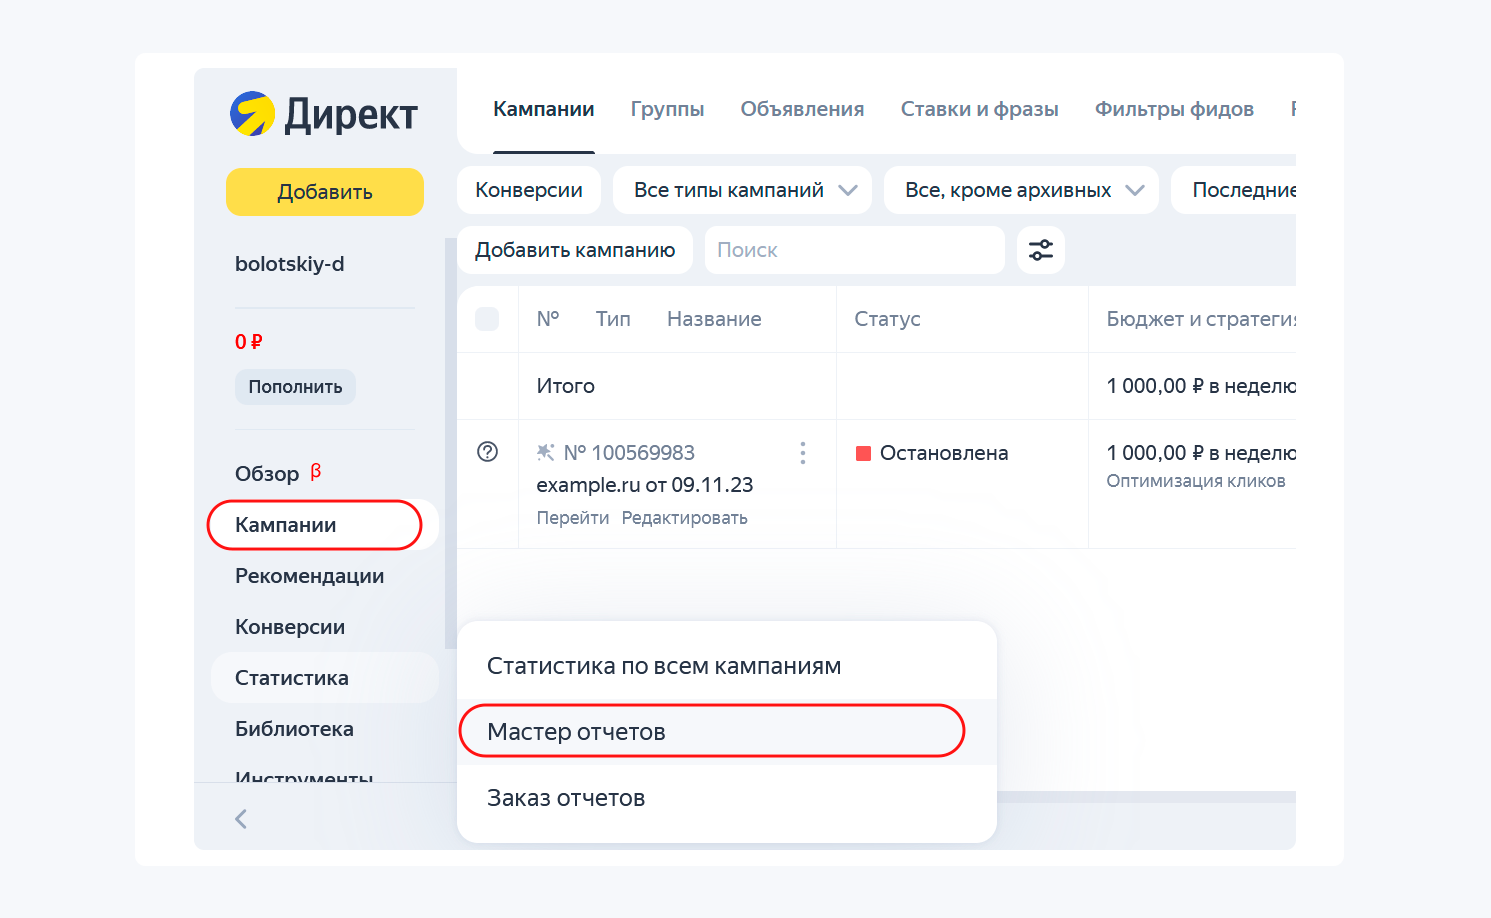 Интерфейс статистики в Яндекс Директе